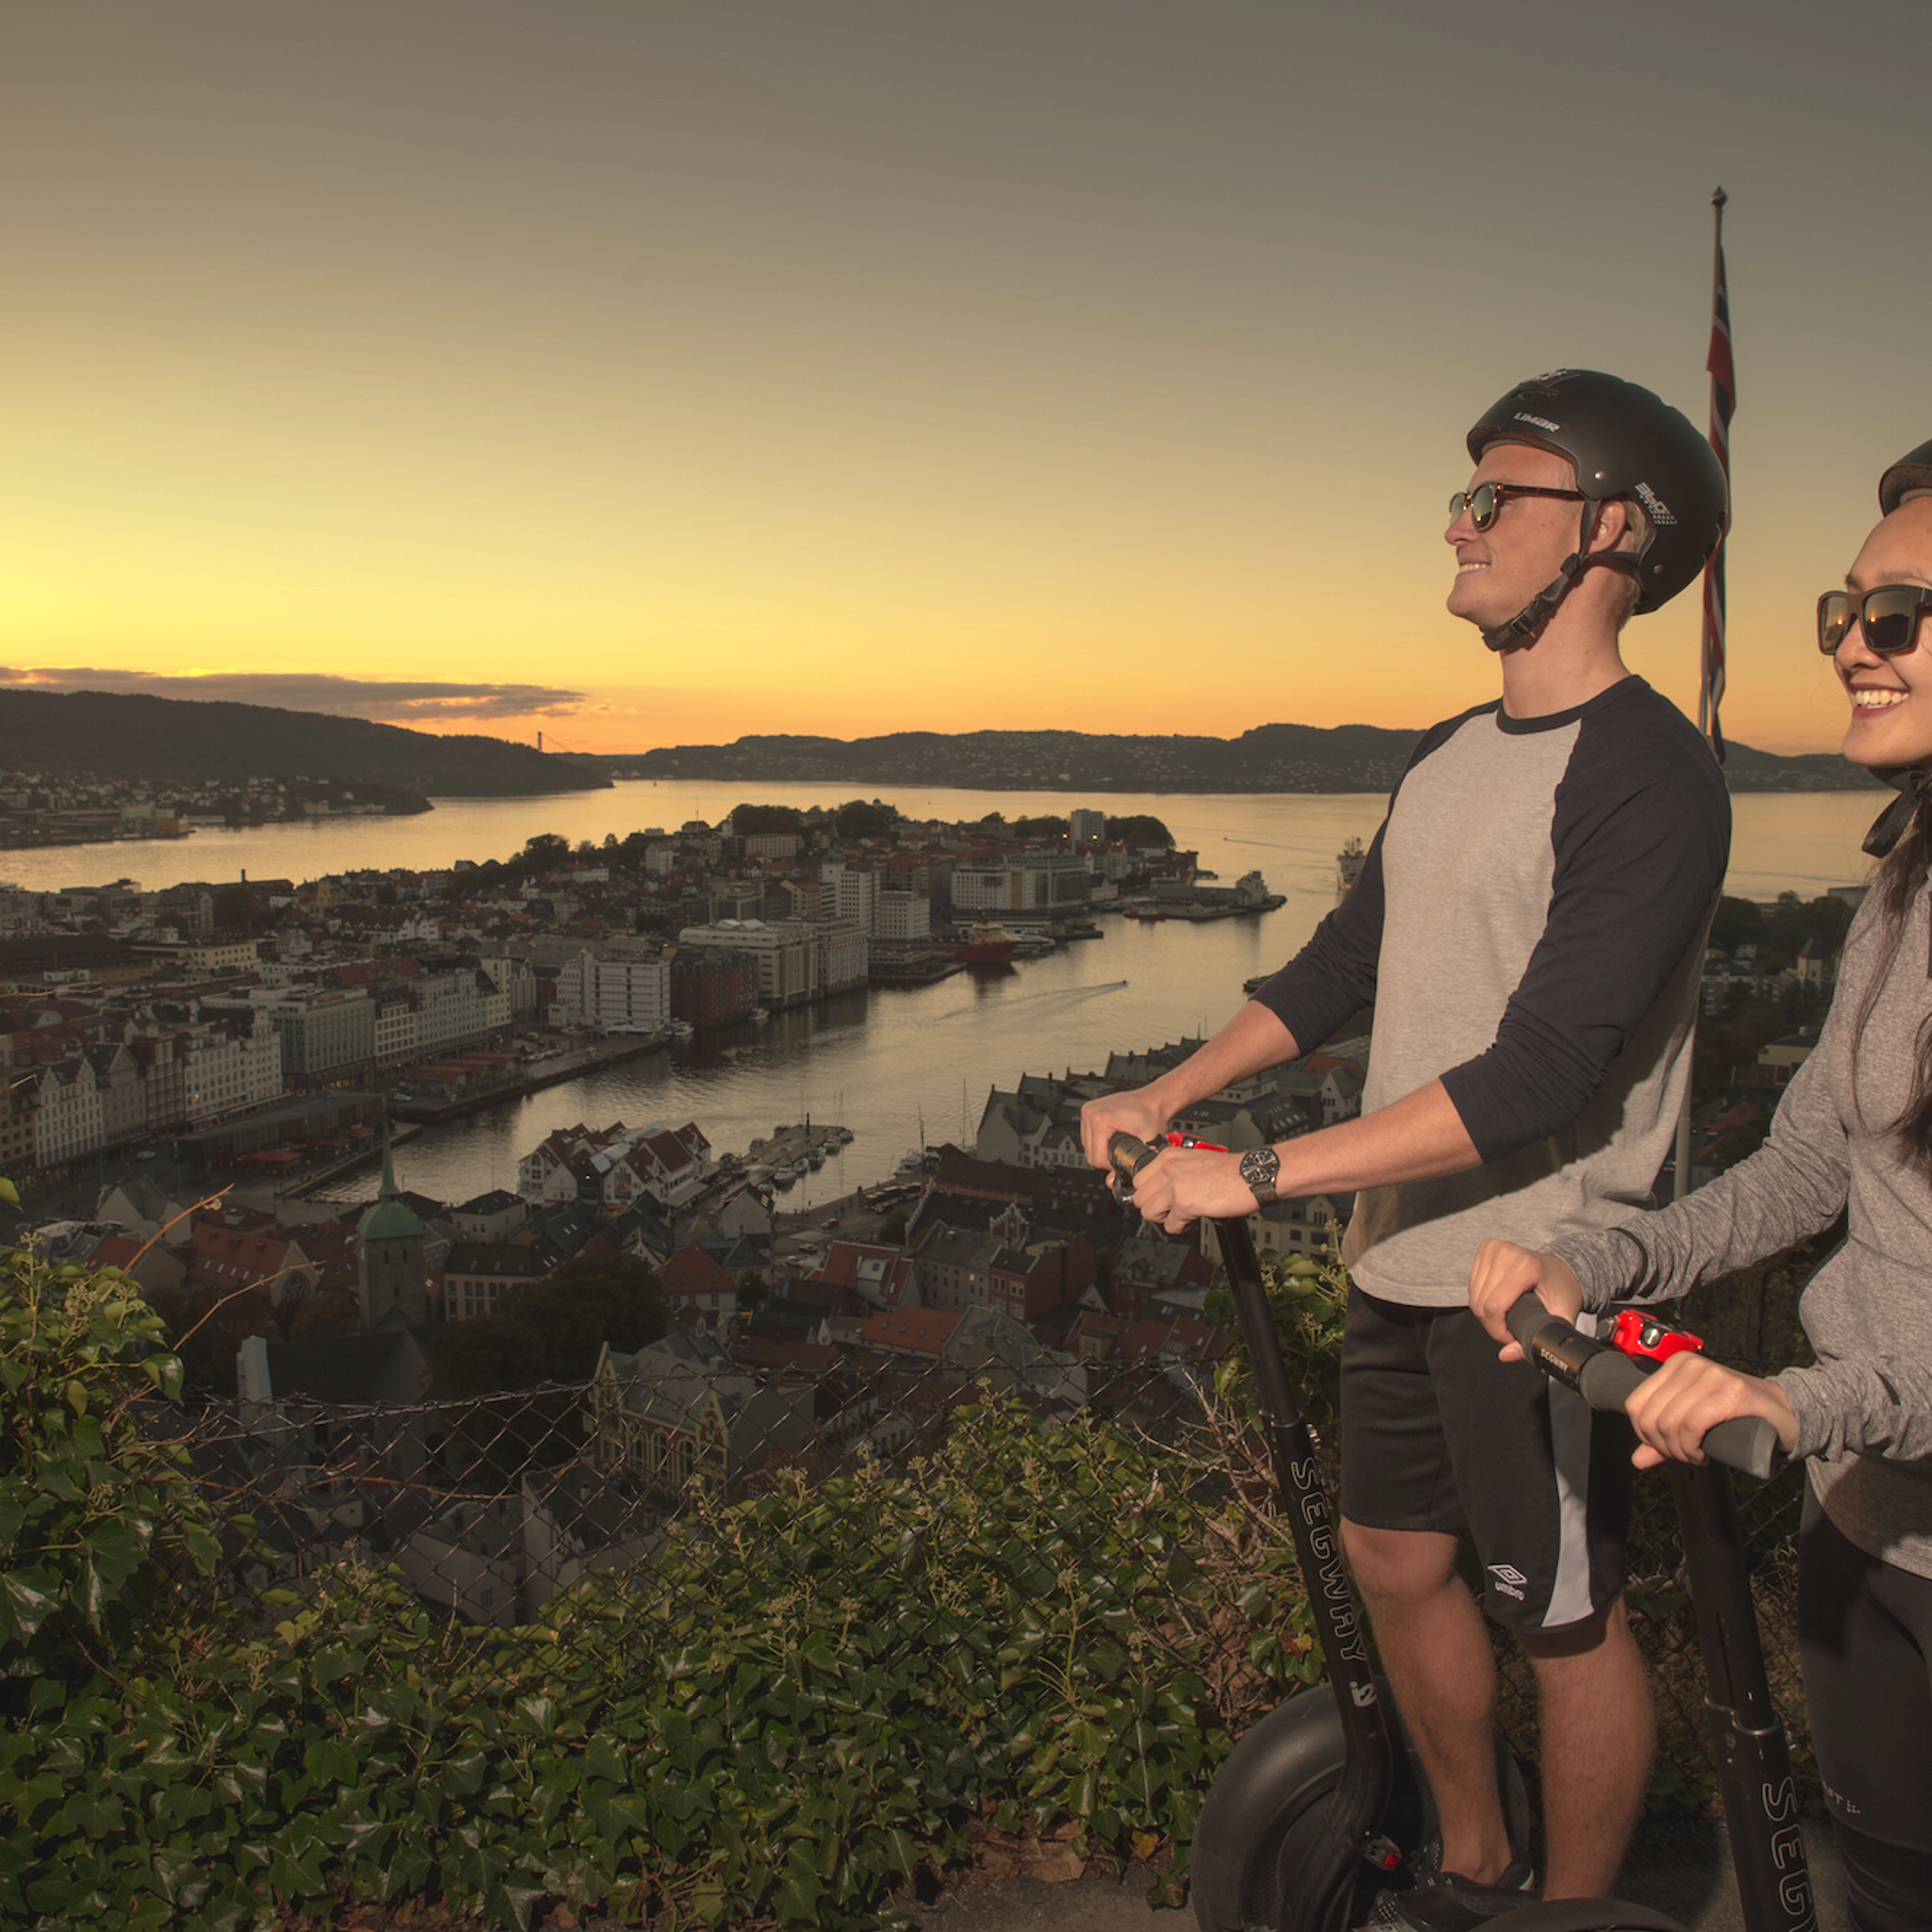 Aktivitäten in Bergen - Genießen Sie den Sonnenuntergang bei einer geführten Segway-Tour - Bergen bei Nacht, Bergen, Norwegen